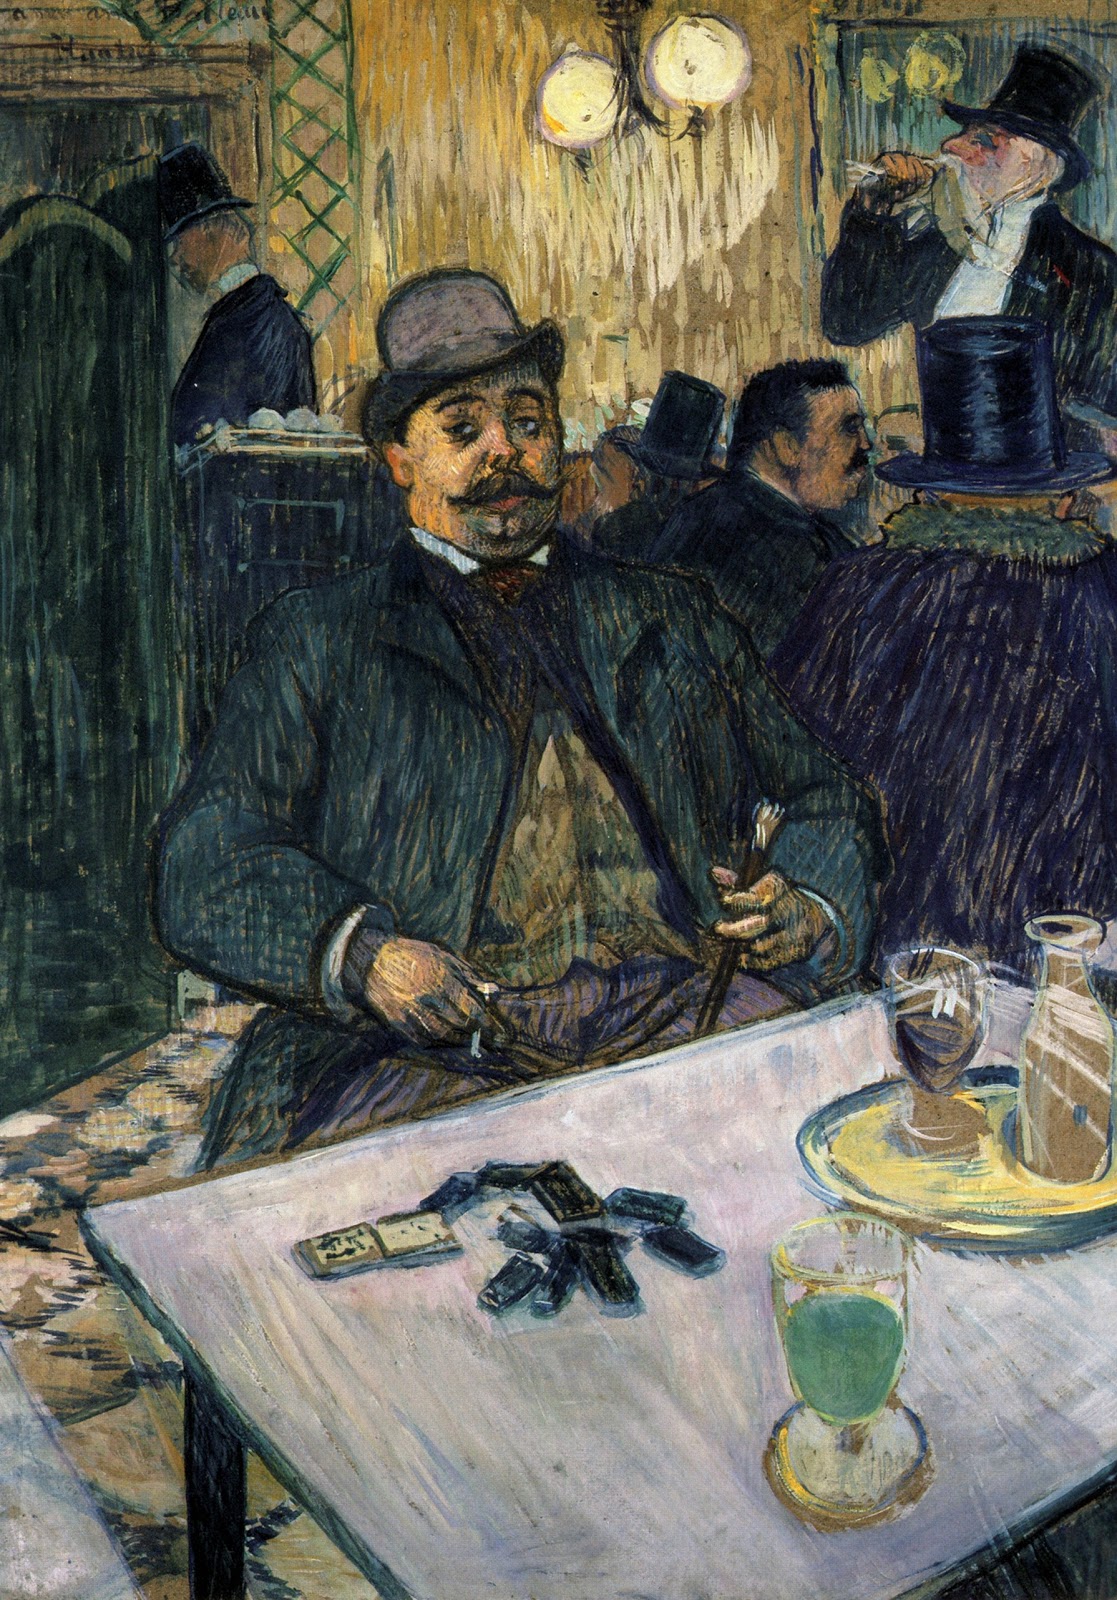 Henri+de+Toulouse+Lautrec-1864-1901 (89).jpg